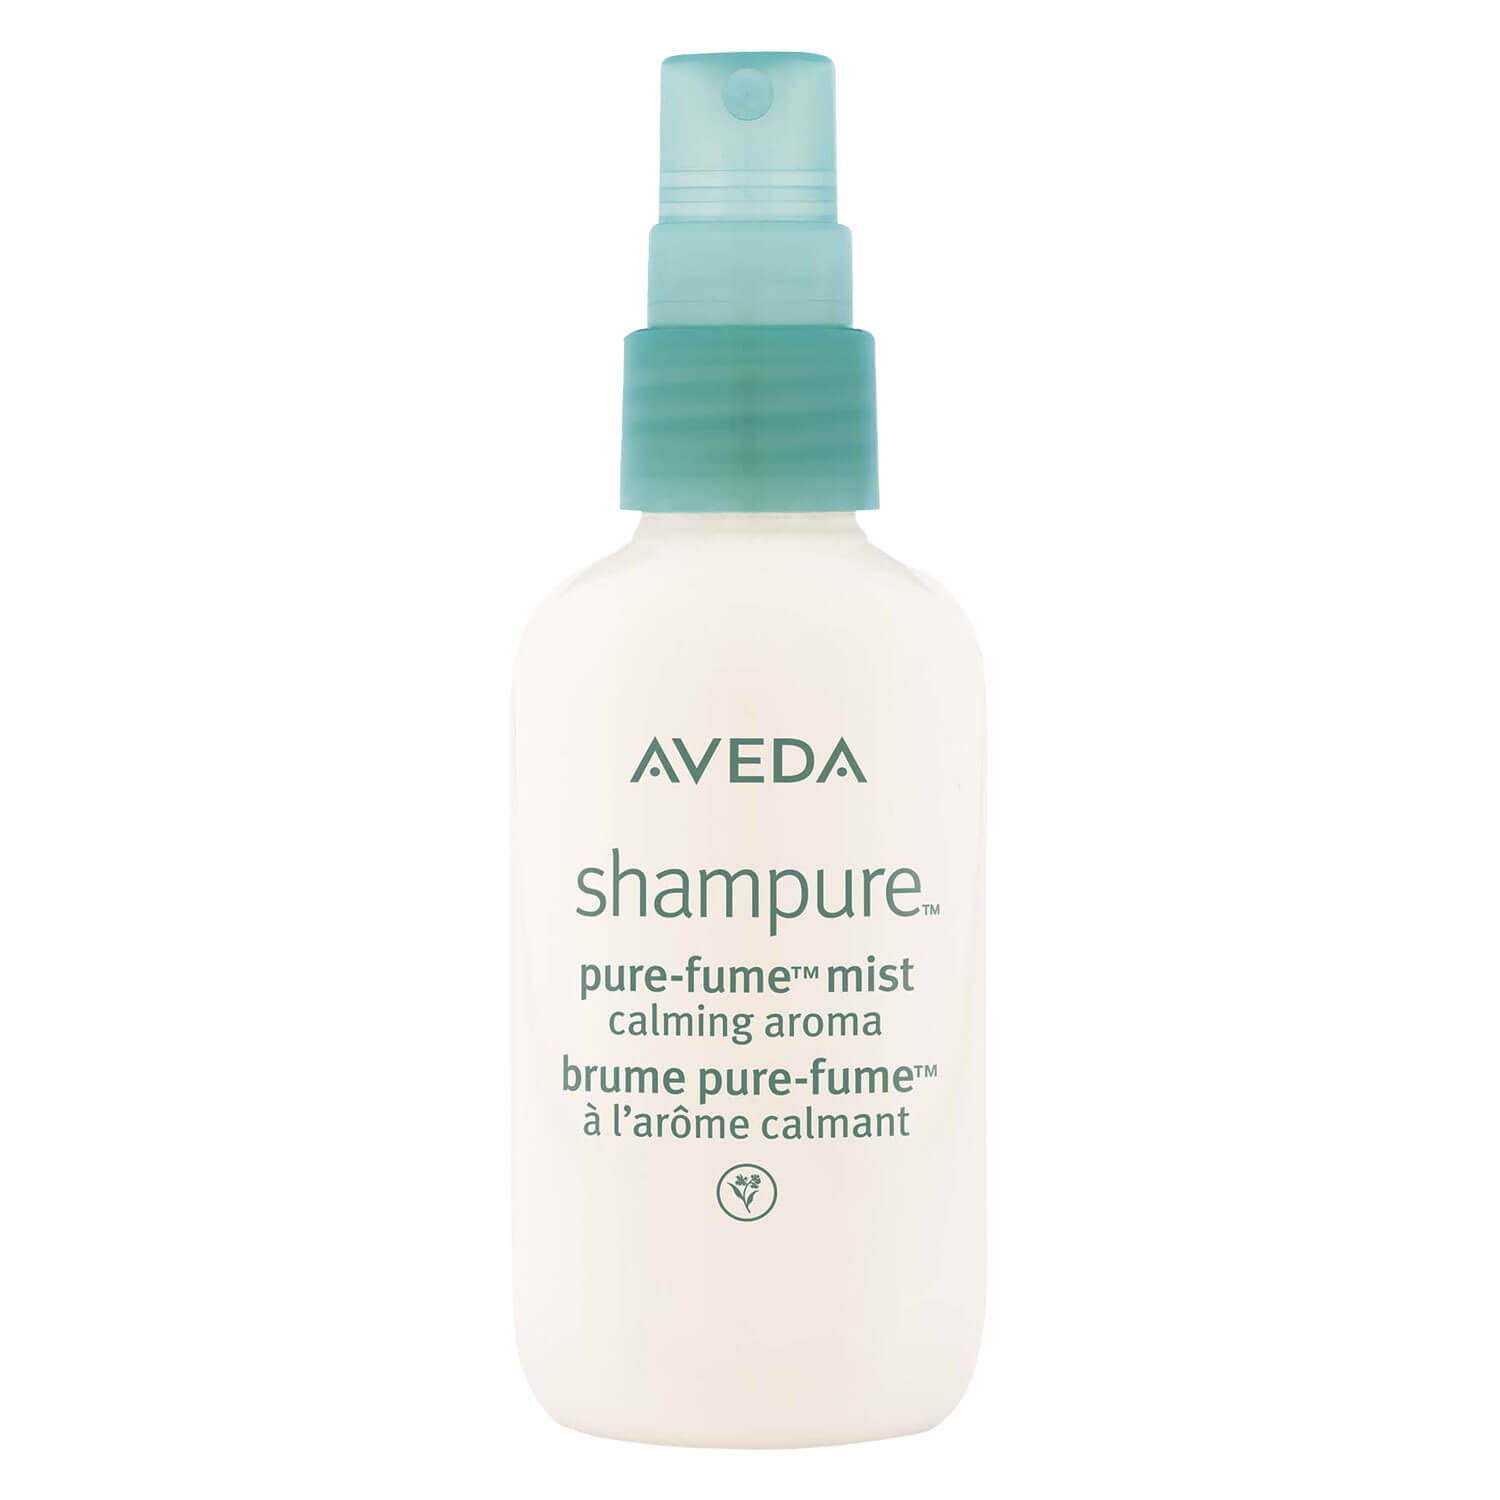 Produktbild von shampure - purefume mist